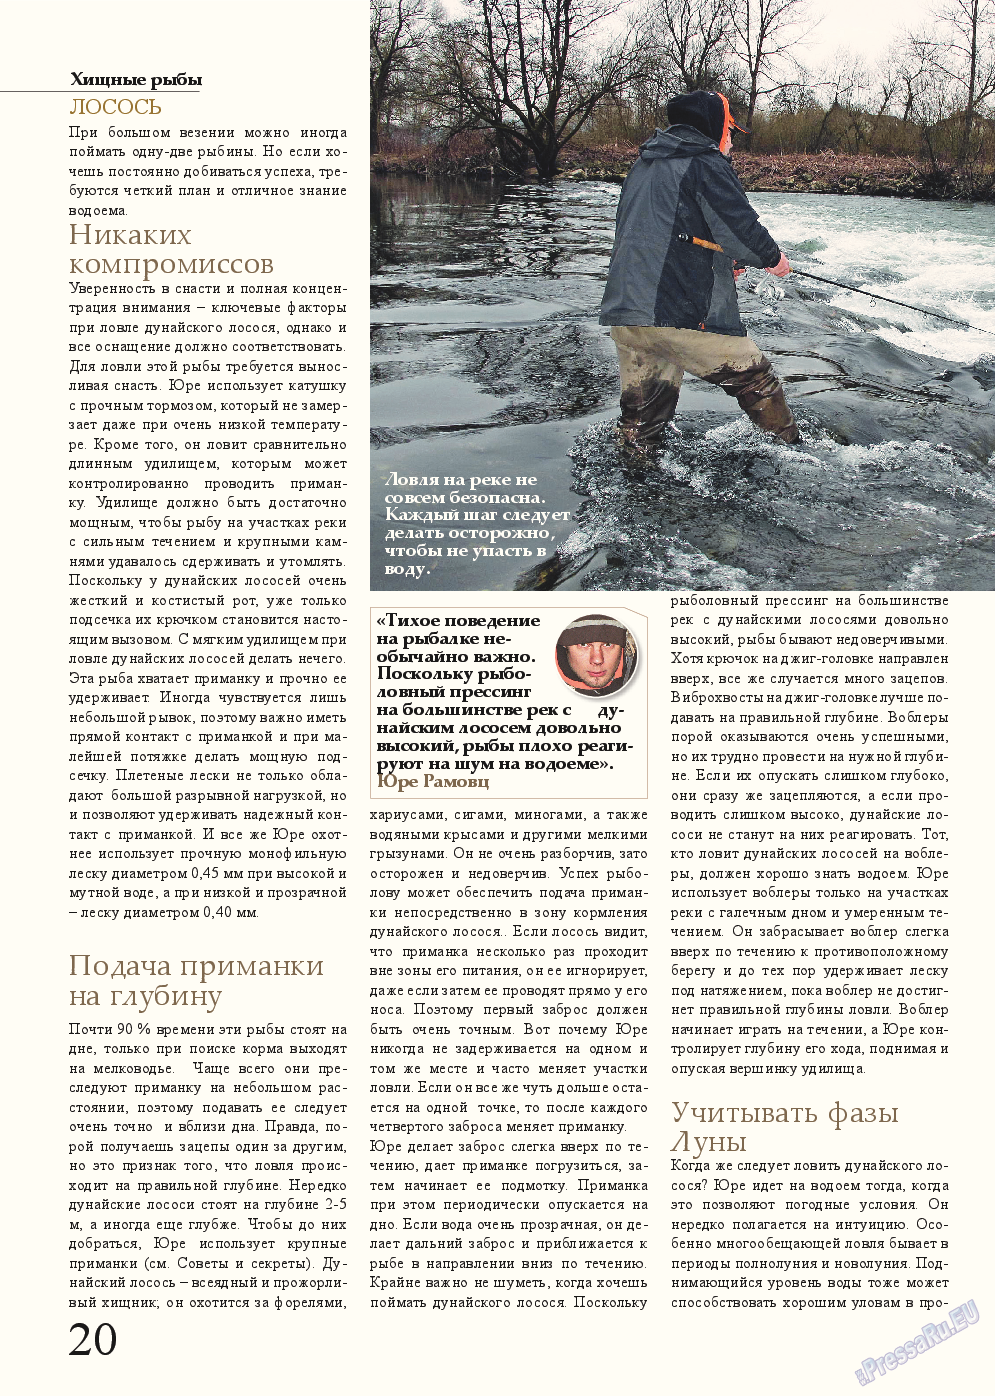 Рыбалка Plus, журнал. 2015 №2 стр.20